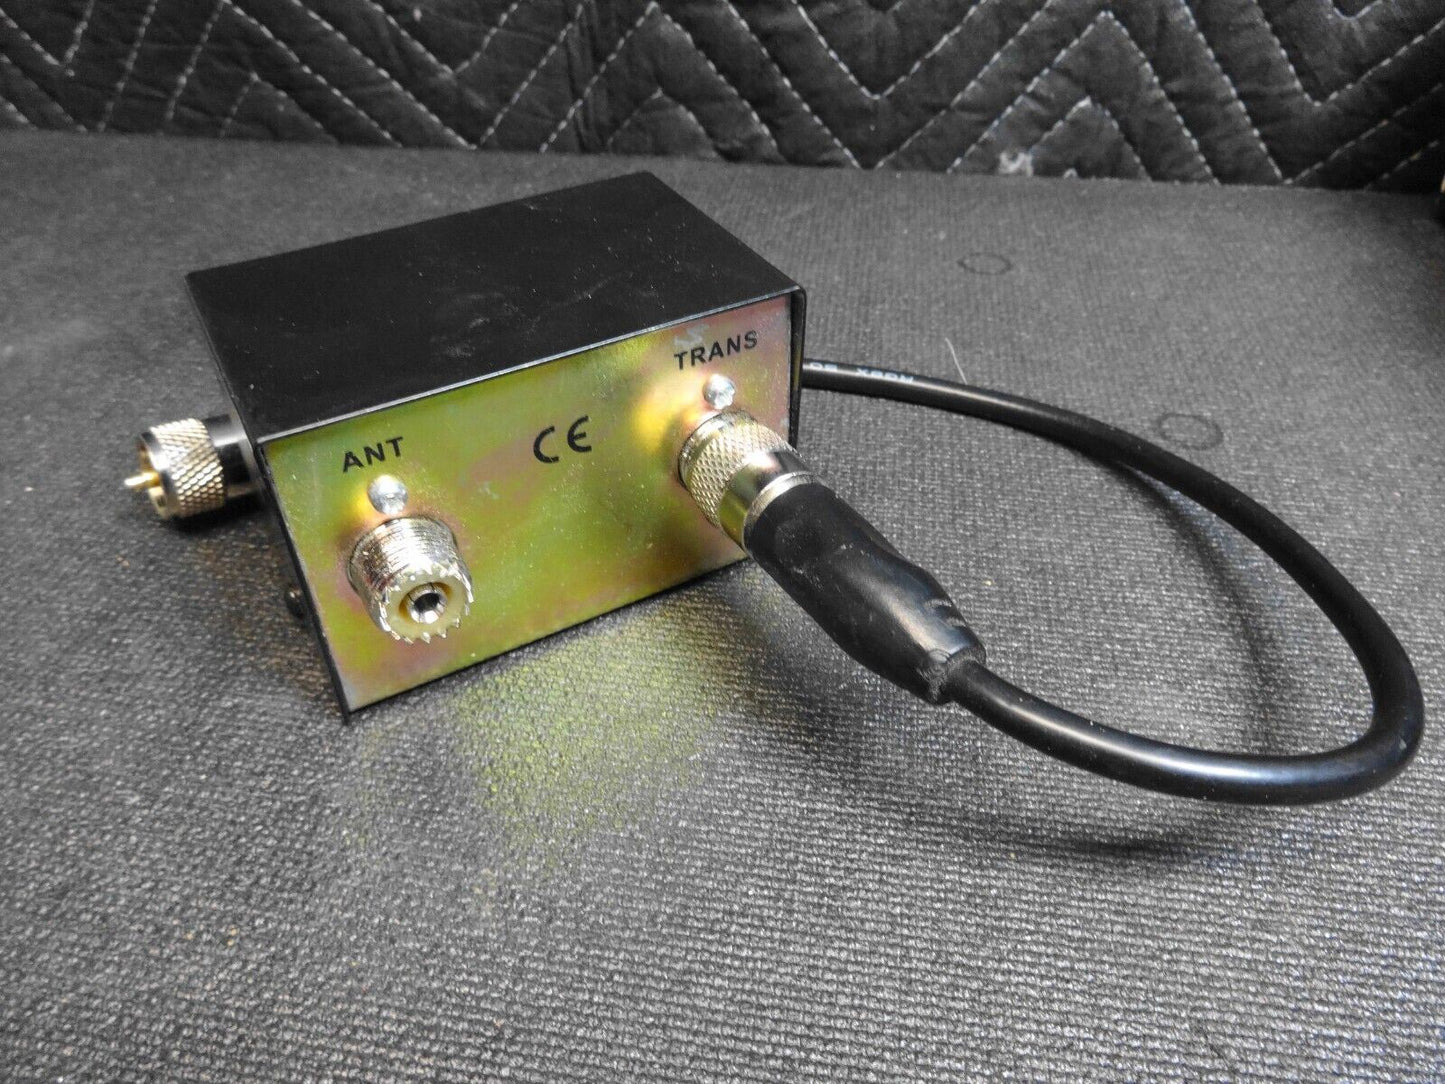 Astatic PDC1 100 Watt SWR Meter 10 watt and 100 watt switches w/ 2’ jumper